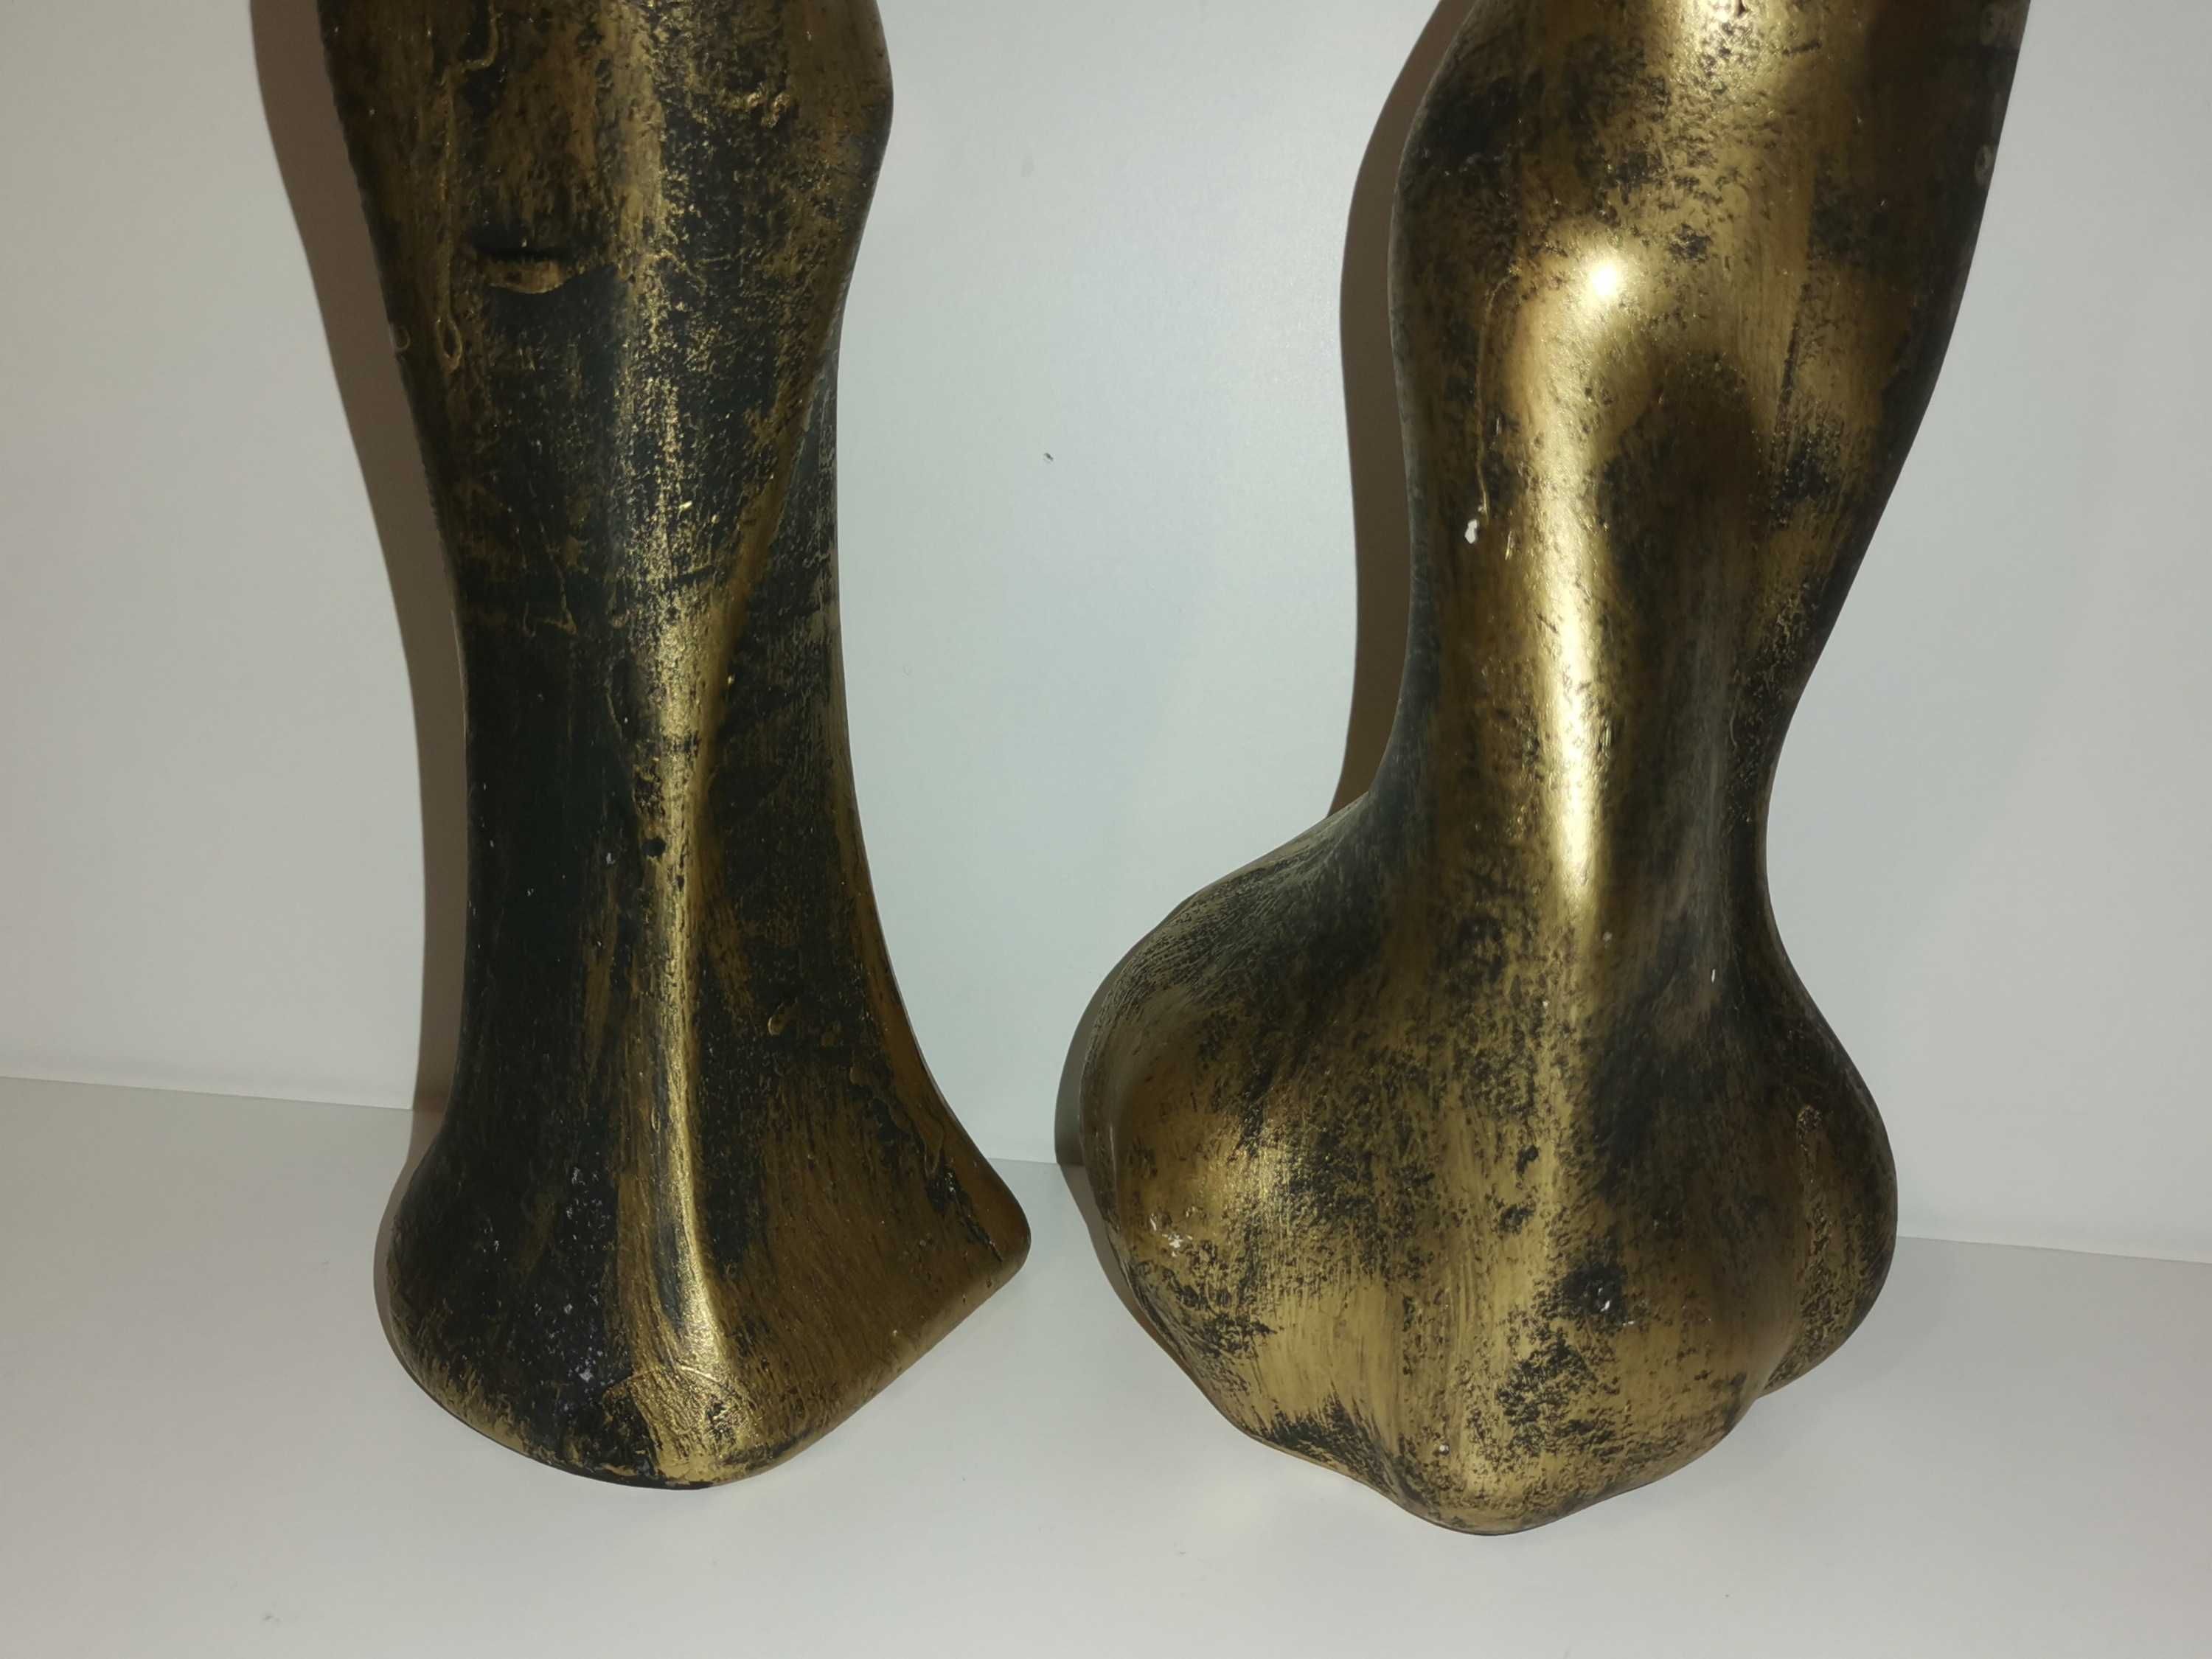 Figurki - klasyczna ozdoba, stare złoto, ceramika, kobieta i mężczyzna